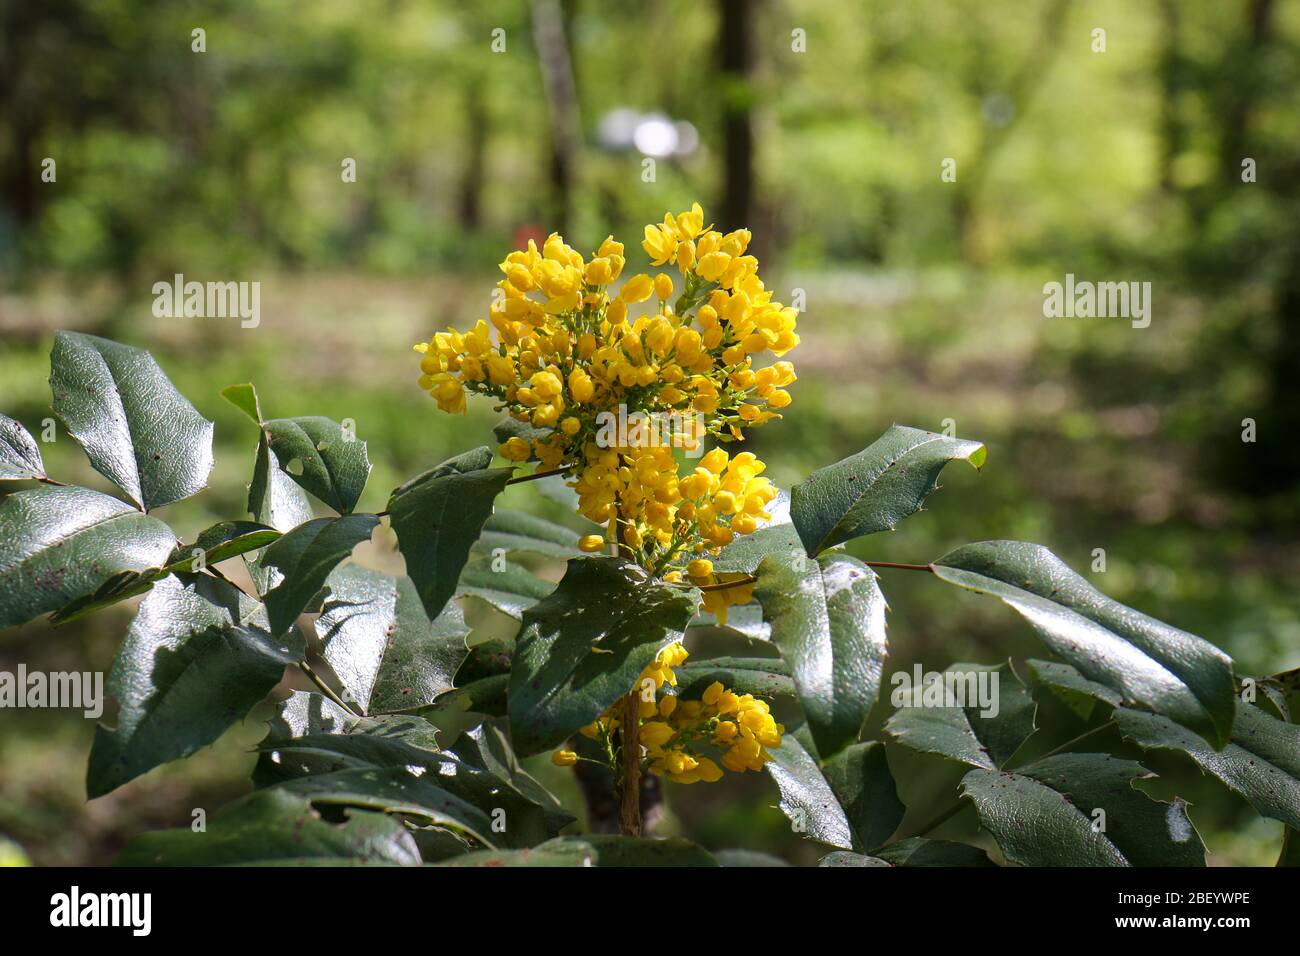 Fiore giallo Mahonia aquifolium, l'uva Oregon, in una giornata di primavera soleggiata in un parco a Berlino. E' un arbusto sempreverde, nella famiglia Berberidaceae. Foto Stock